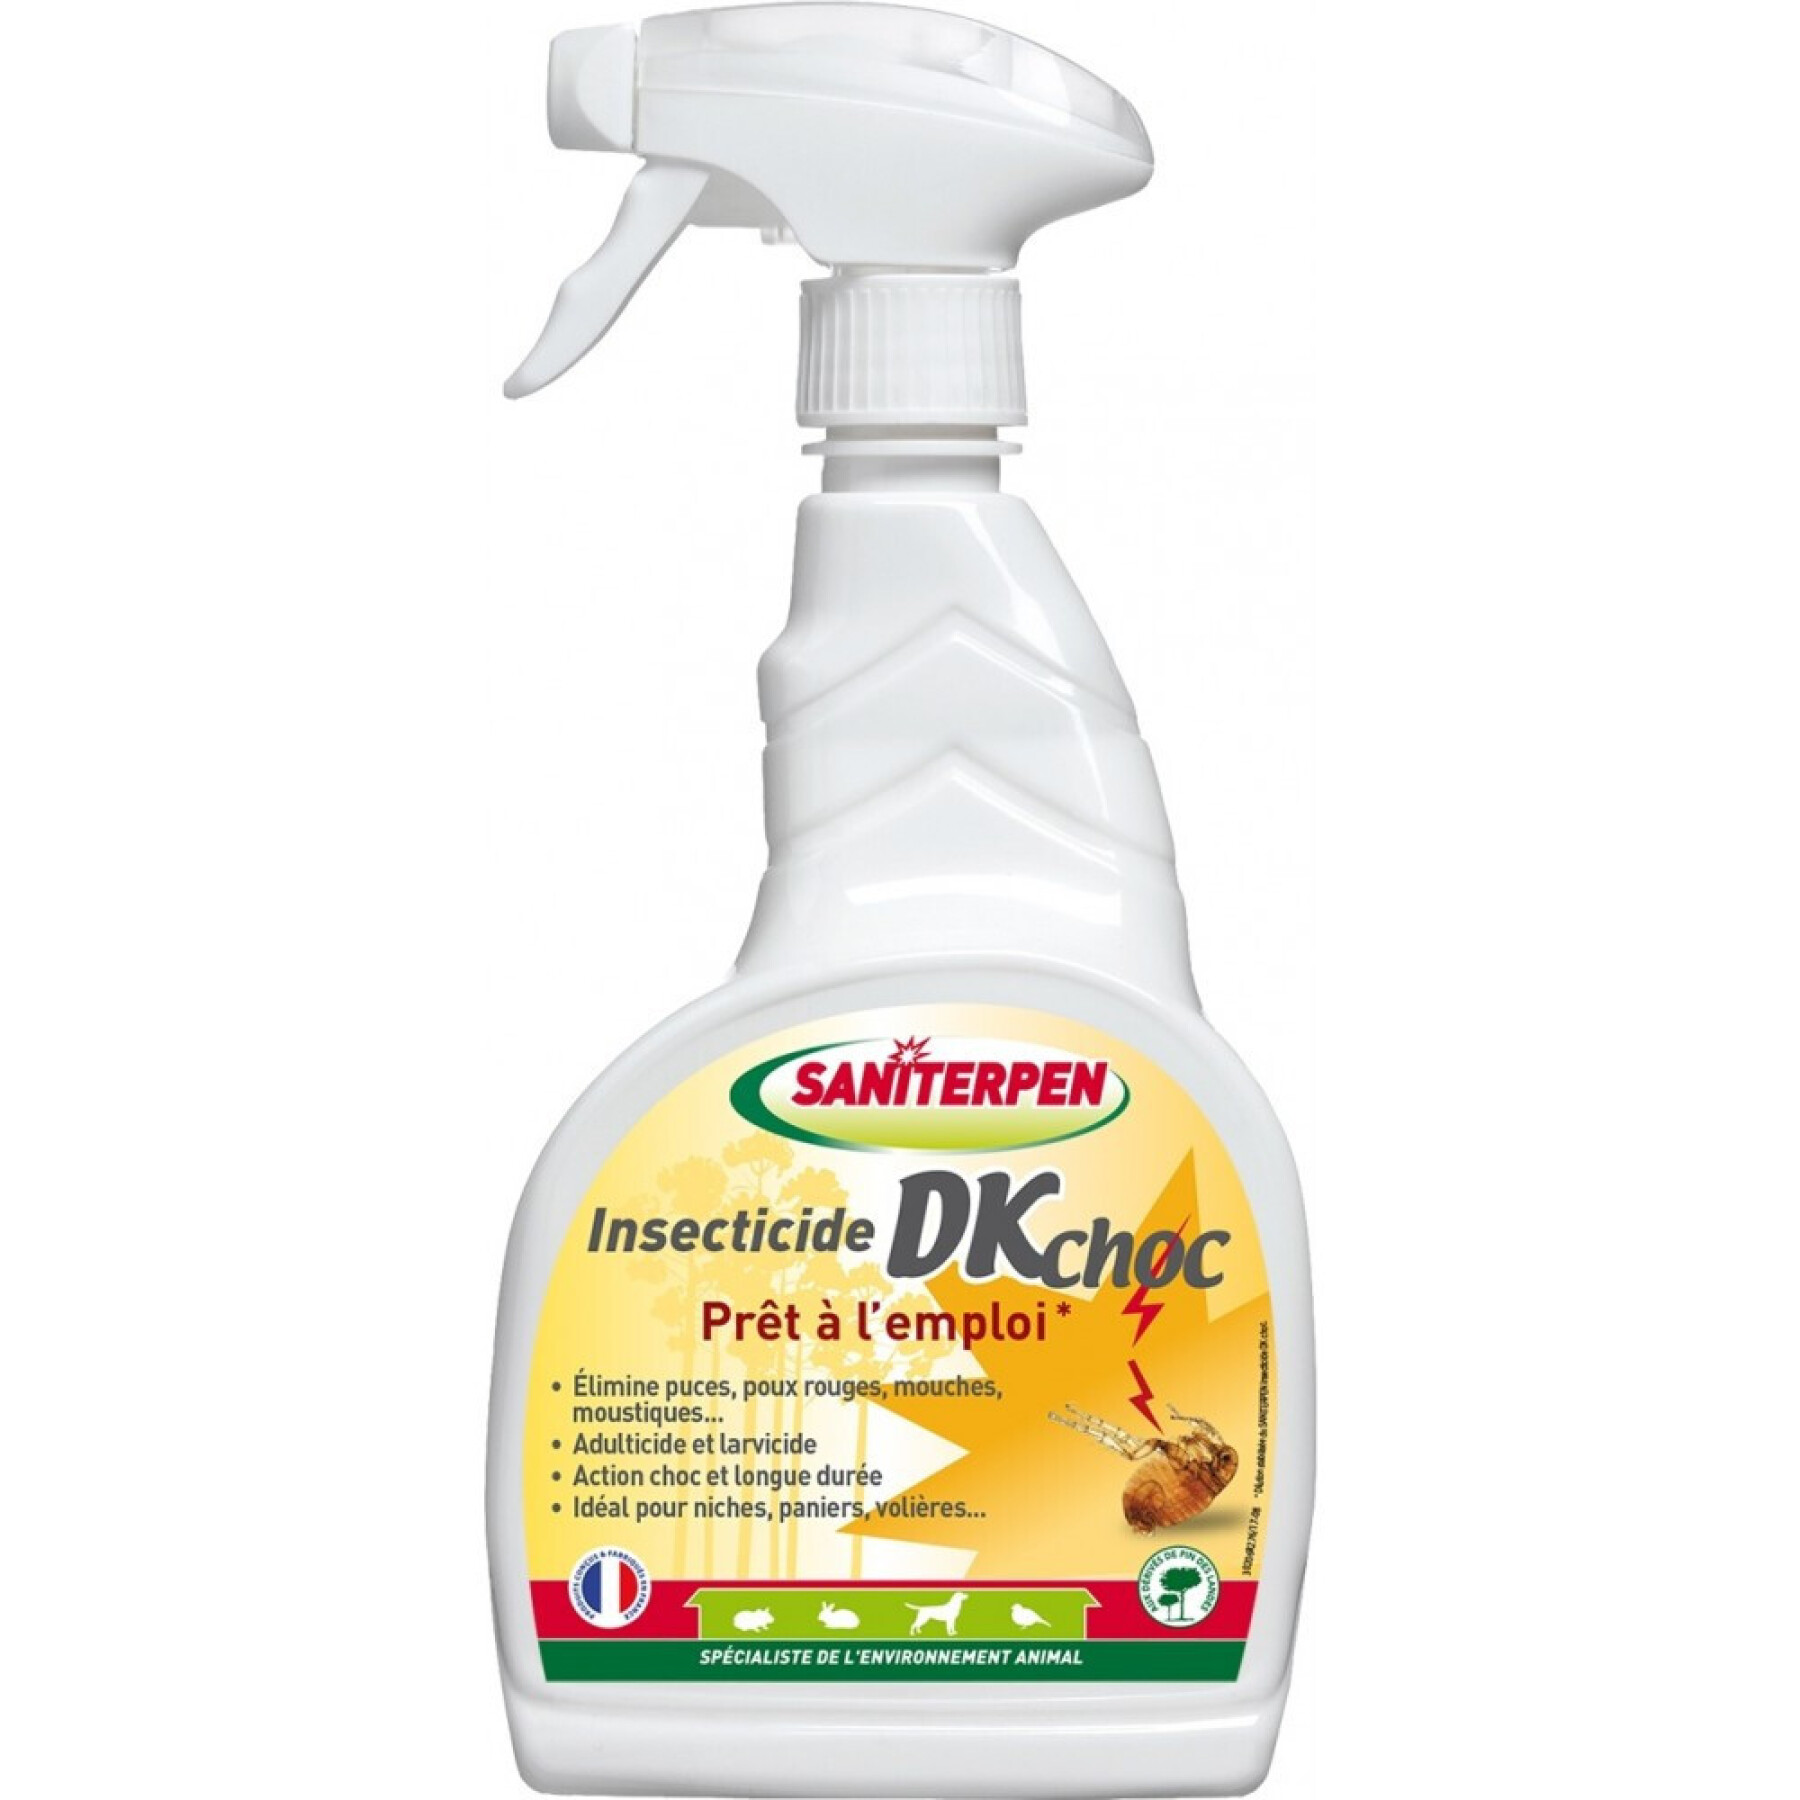 Insect repellent Saniterpen DK